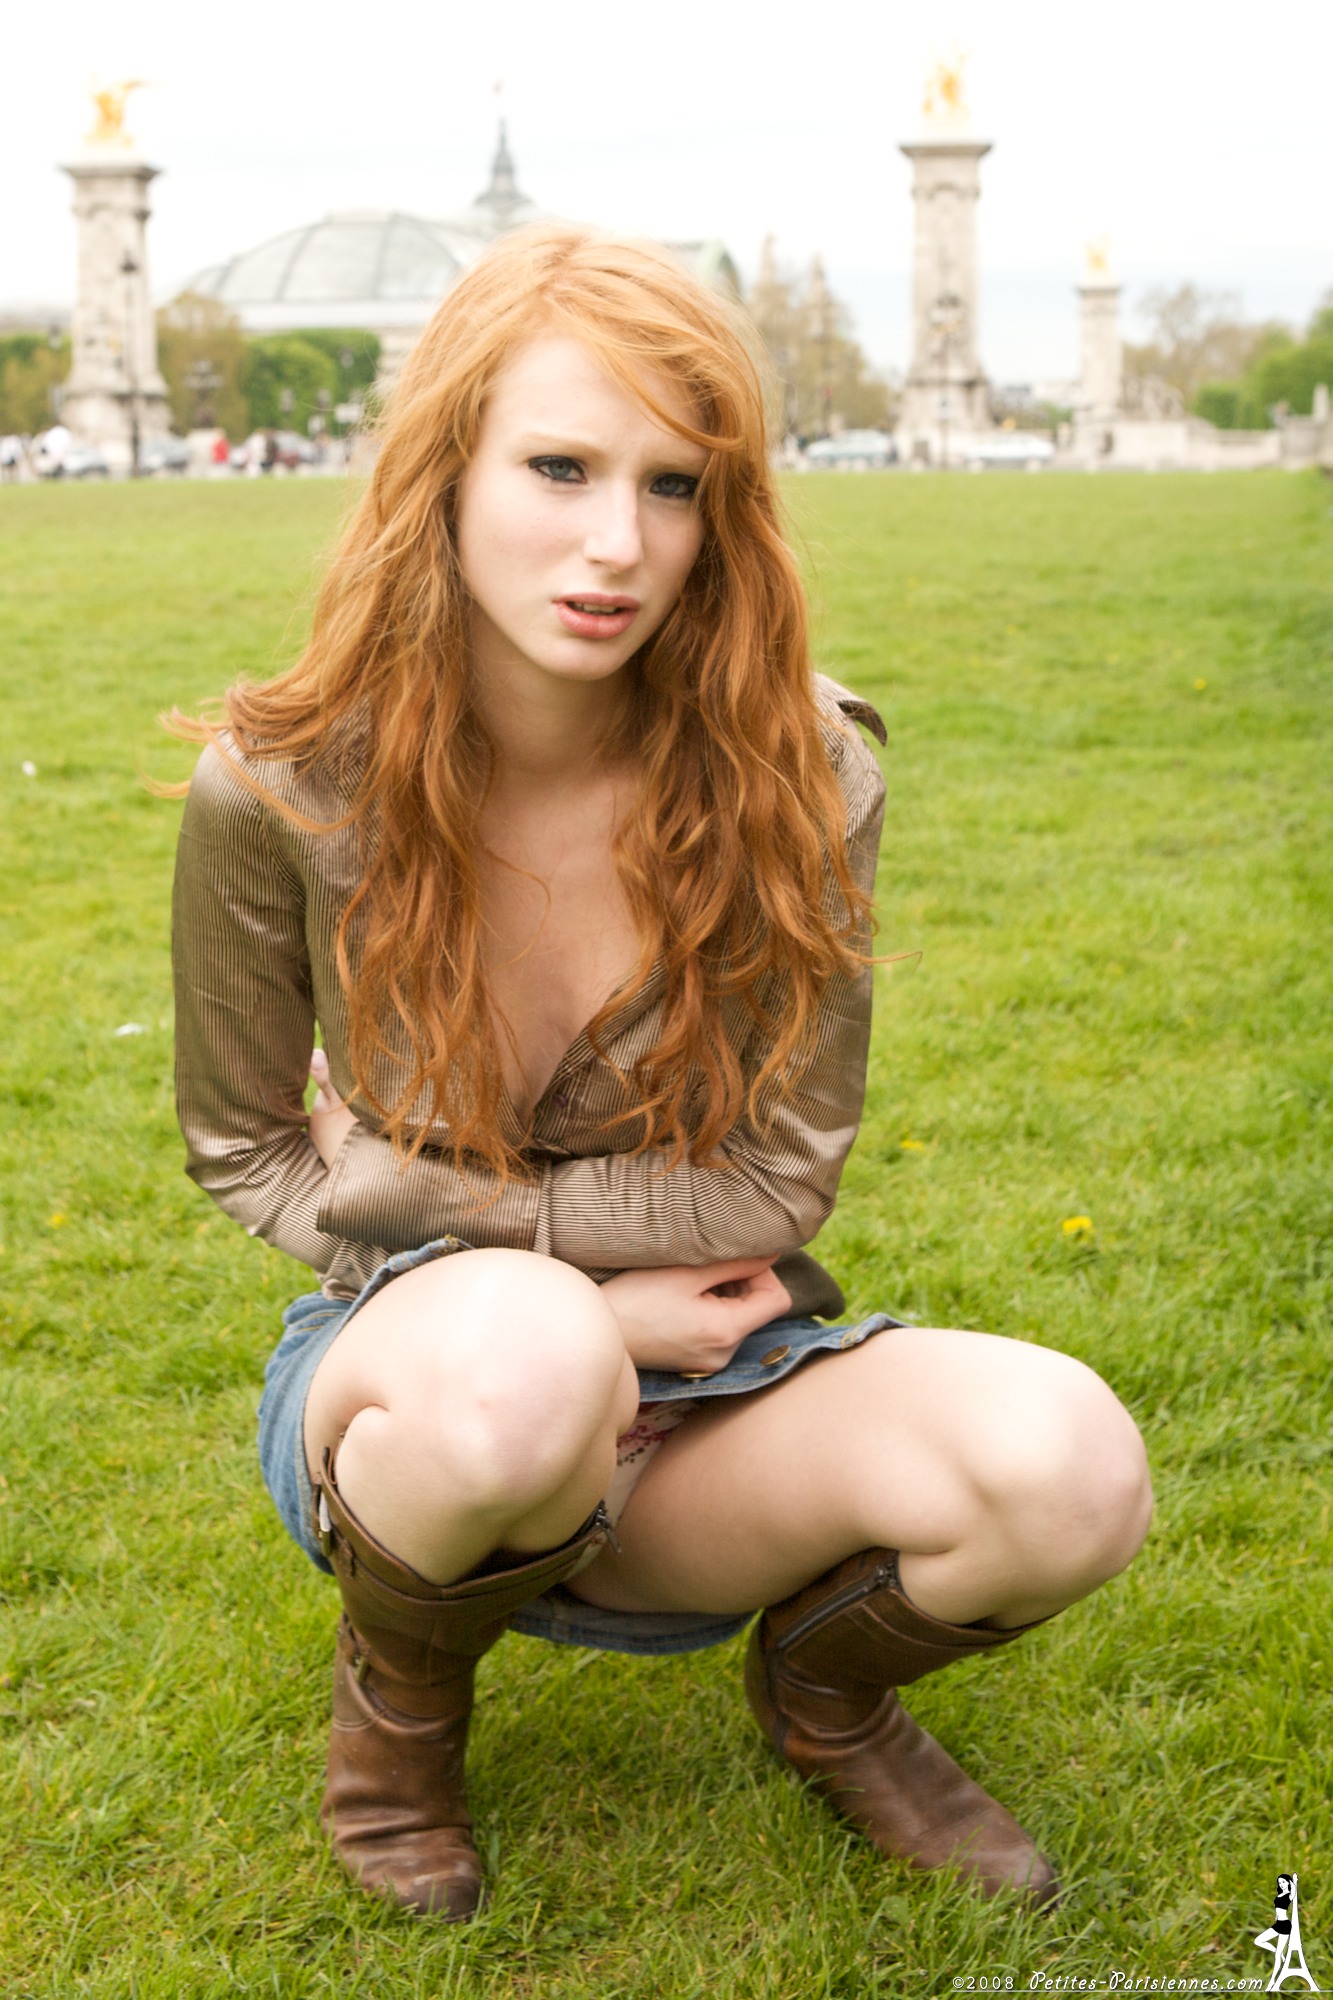 juliette-young-redhead-petites-parisiennes-19